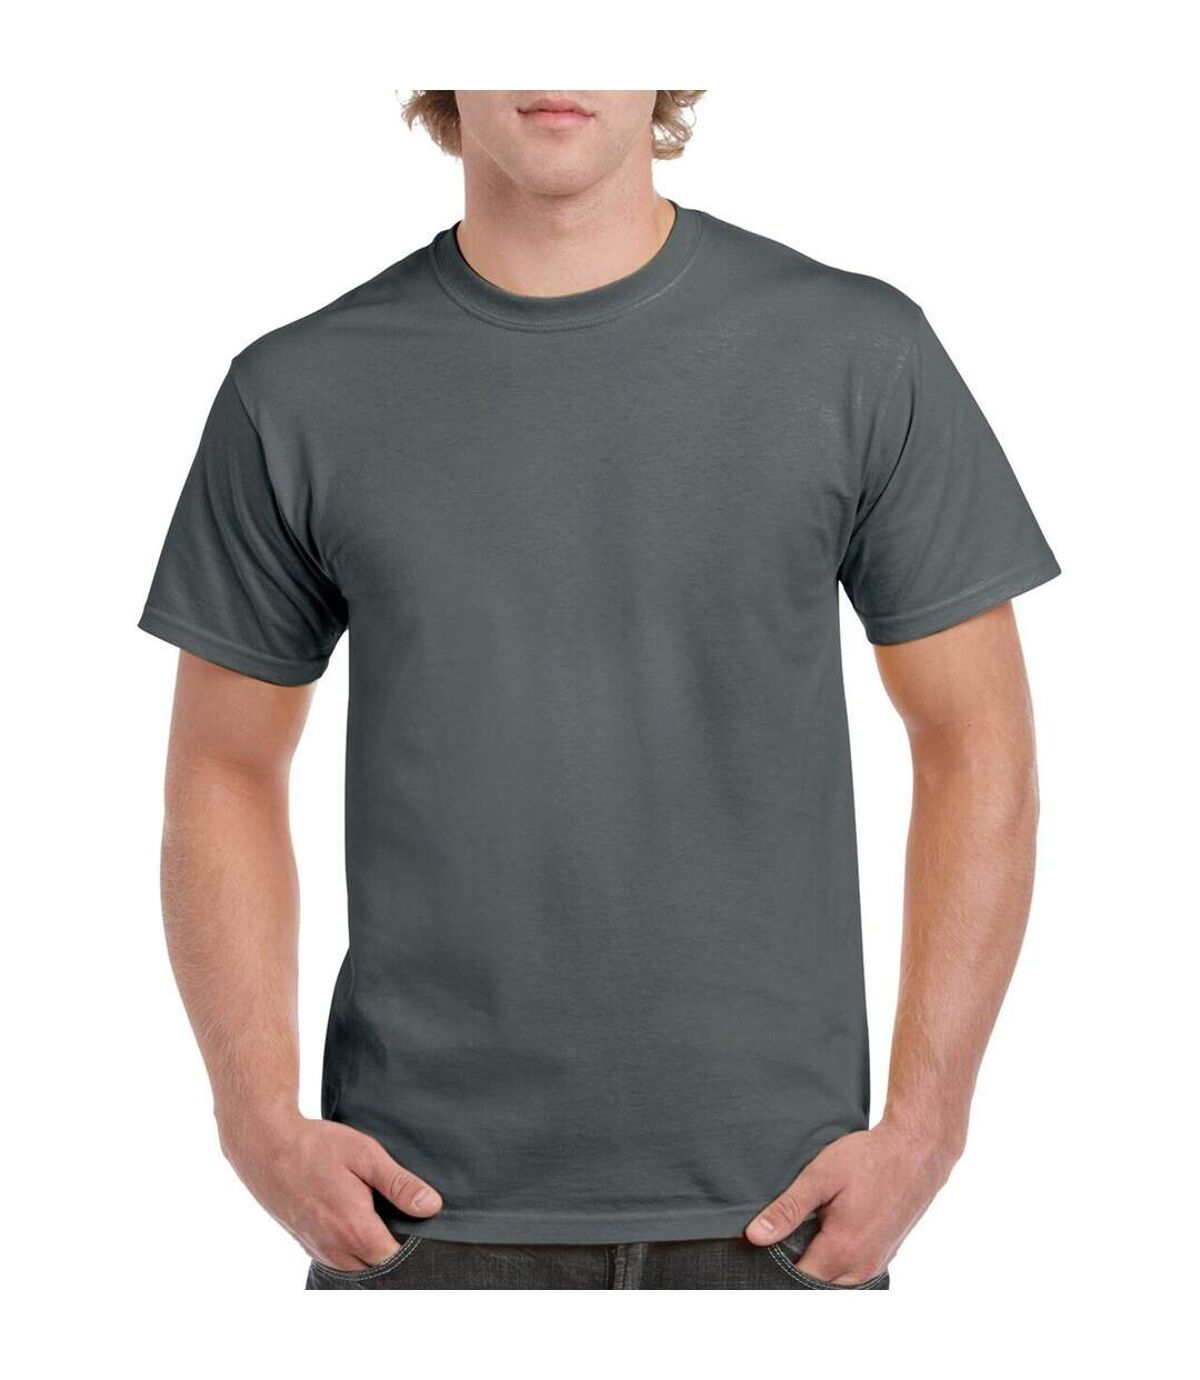 Gildan – Lot de 5 T-shirts manches courtes - Hommes (Gris foncé) - UTBC4807